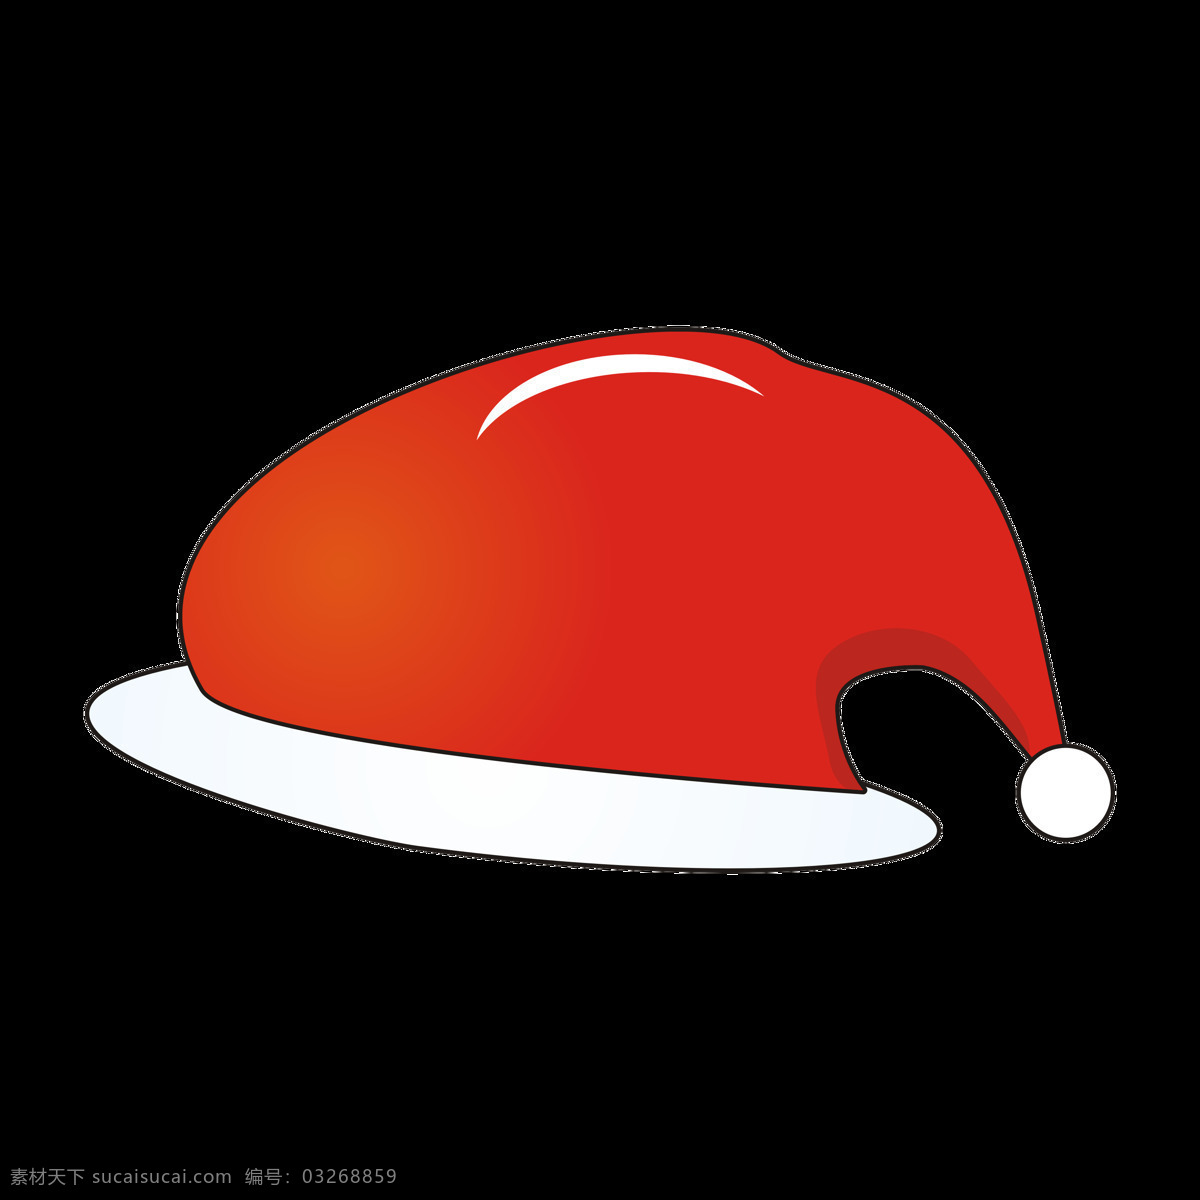 圣诞 元素 帽子 卡 通风 圣诞老人 红色 圣诞元素 圣诞帽子 卡通风格 圣诞老人帽 红色帽子